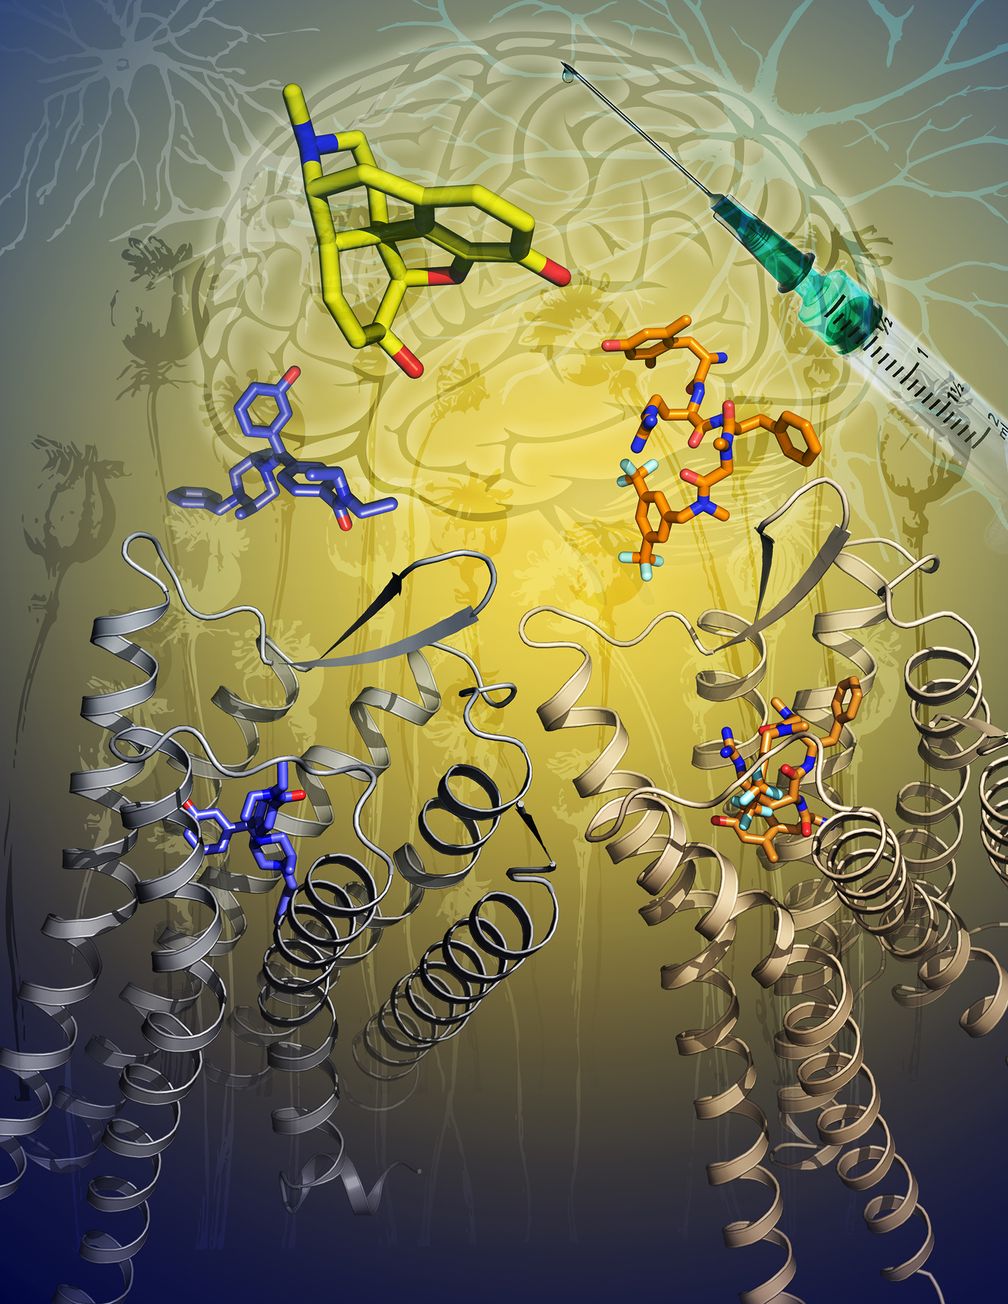 Die Grafik zeigt die zwei beschriebenen Kristallstrukturen des Delta-Opioid-(DOP)-Rezeptors mit aktivierenden Molekülen (blau und orange). Morphin, ein starkes Schmerzmittel, ist in Gelb dargestellt.
Quelle: © Grafik: Katya Kadyshevskaya/University of Southern California (idw)